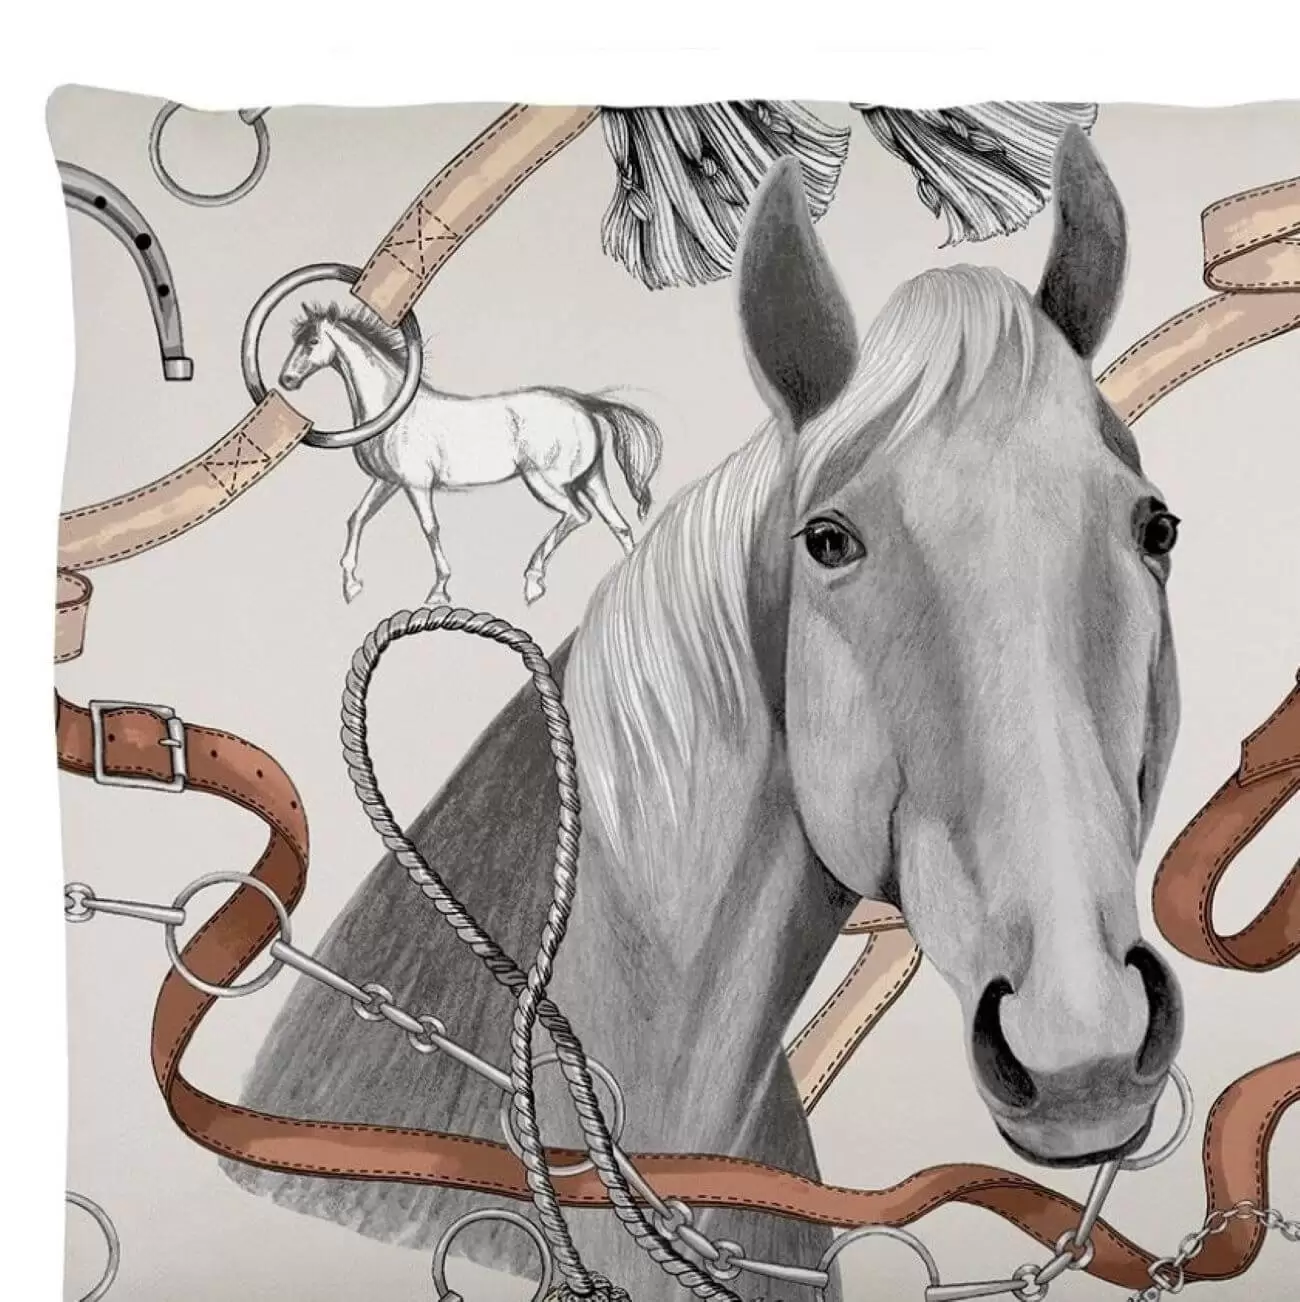 Poszewka z koniem RATSU fragment. Młodzieżowy wzór poszewki na poduszkę 50x60 dla dziewczynki w rysowane konie i akcesoria z nimi związane na beżowym tle. Skandynawski design